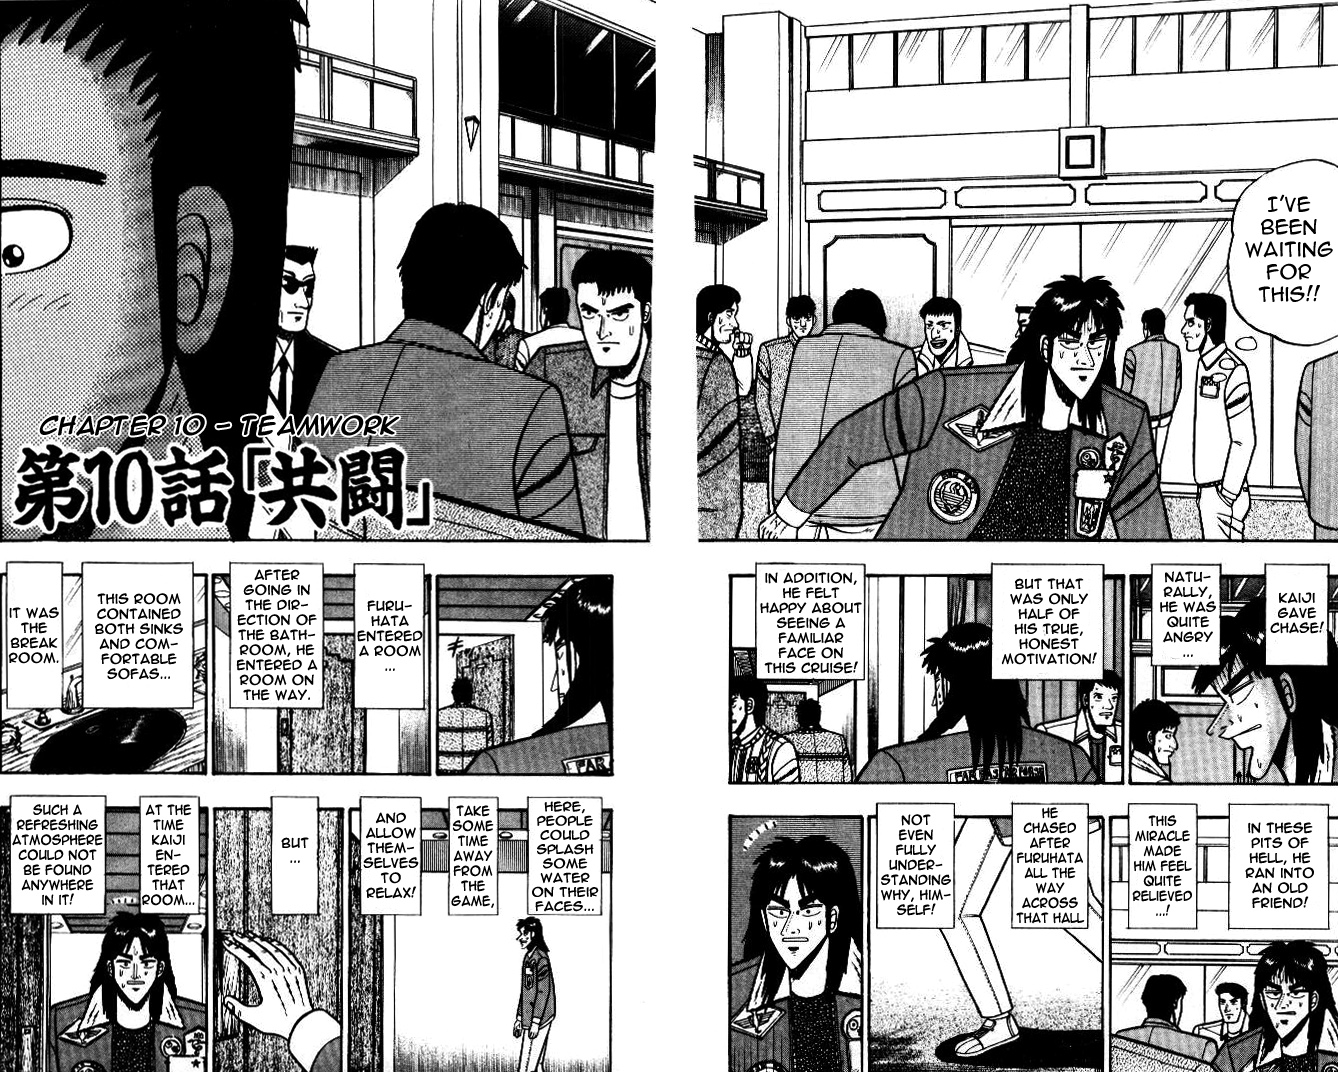 Tobaku Mokushiroku Kaiji Vol.1 Chapter 10: Teamwork - Picture 2